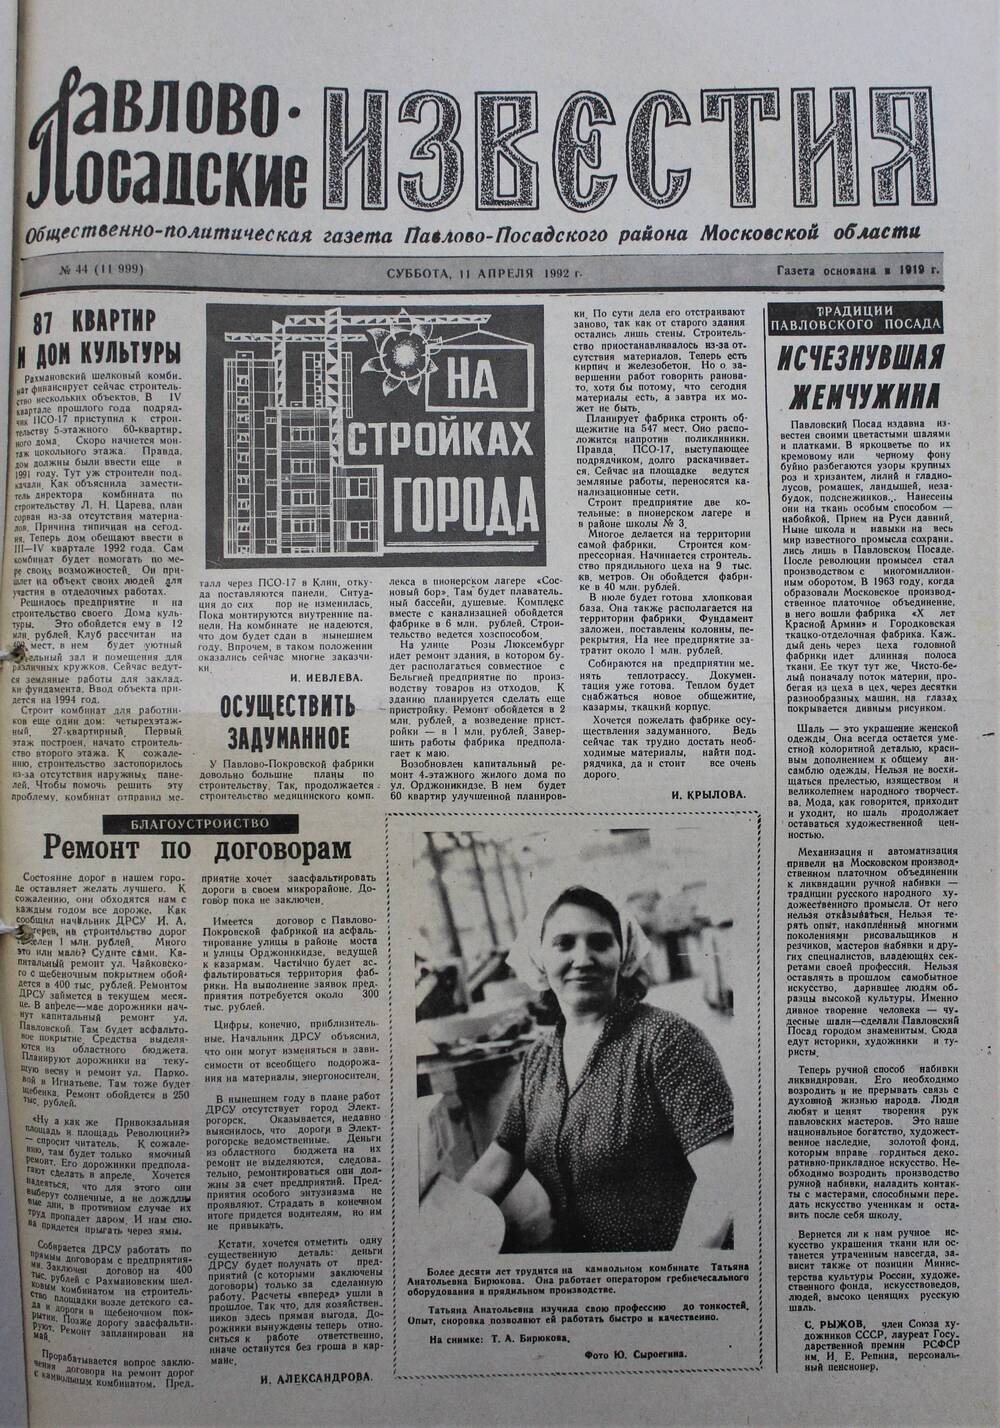 Газета Павлово-Посадские известия № 44 (11999)  от 11 апреля 1992 г.